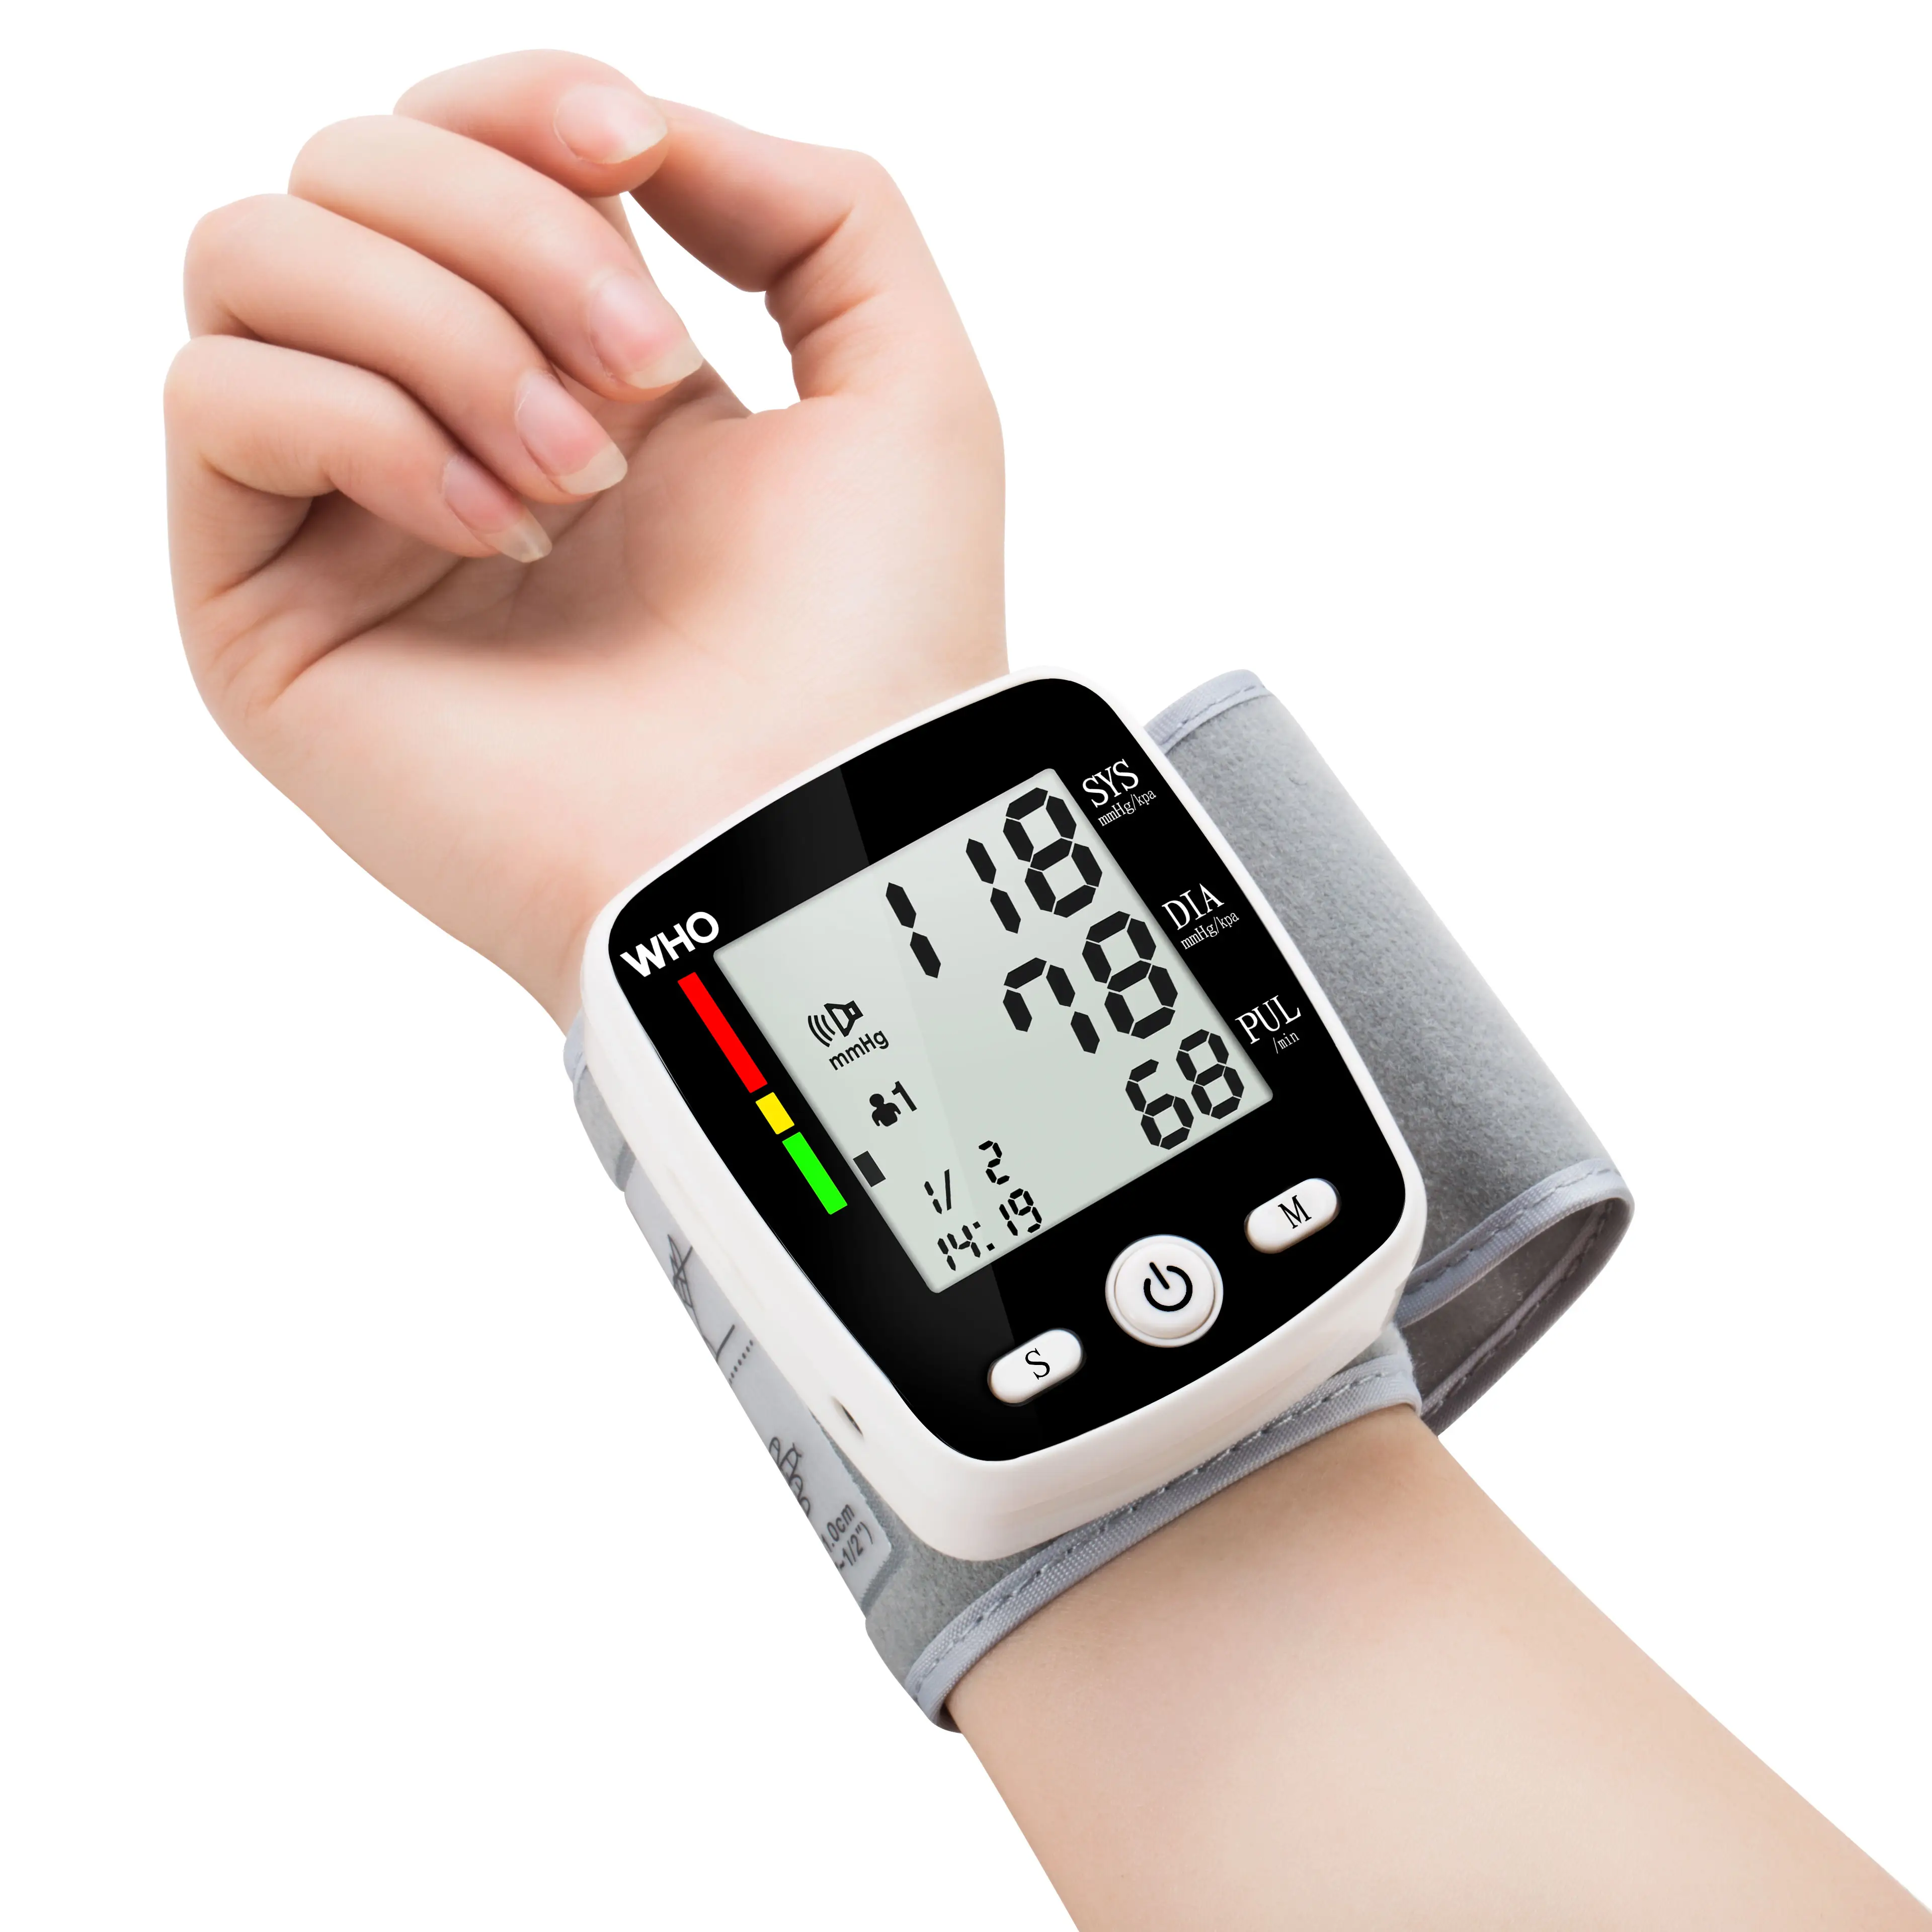 الساخنة و رخيصة بيع بالجملة الإلكترونية معصم رقمية مراقبة ضغط الدم